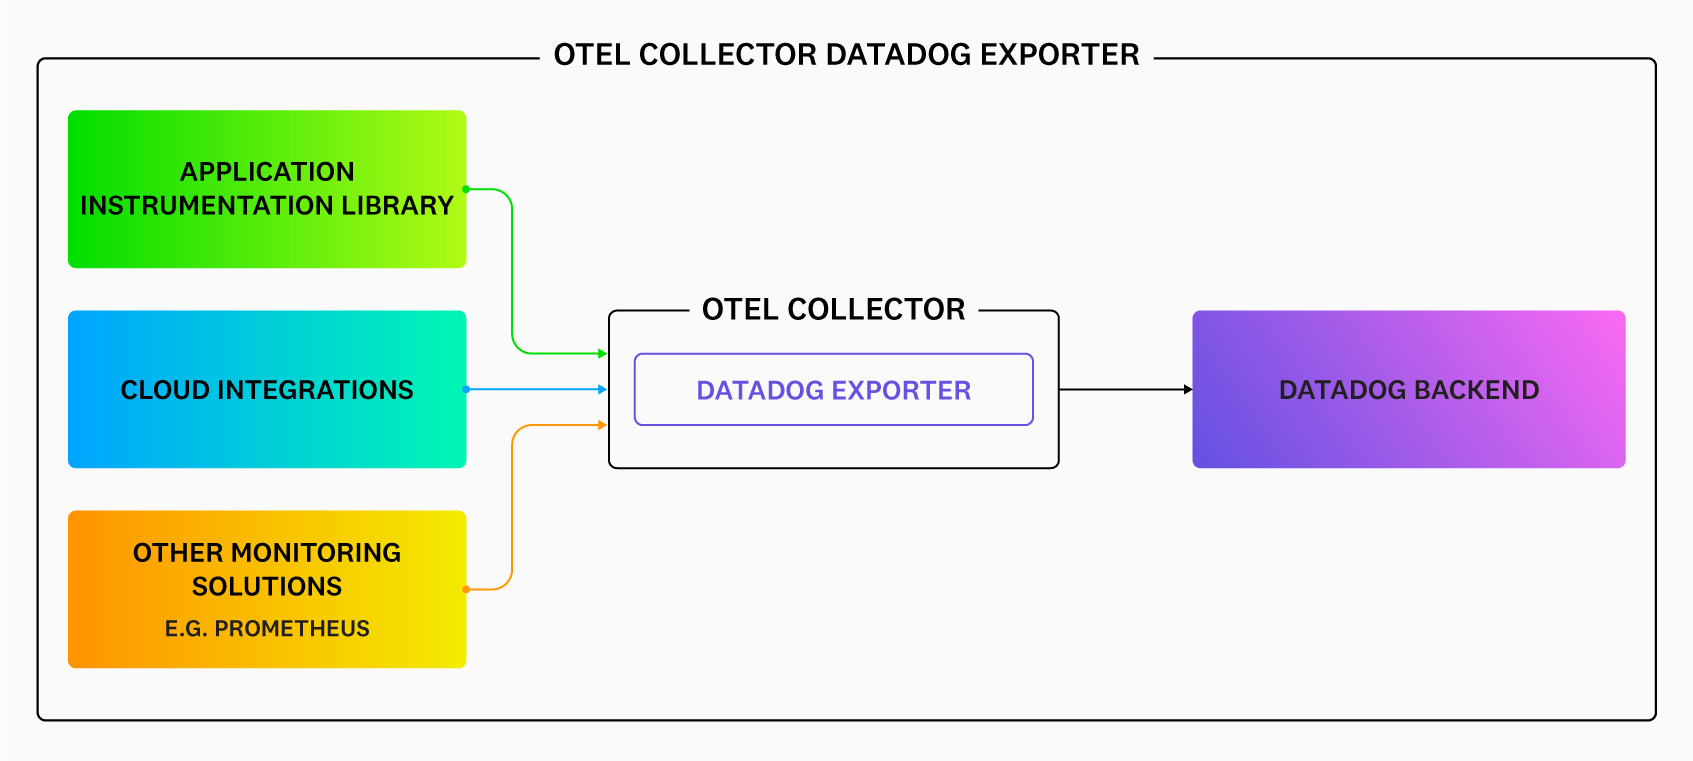 datadogexporter.png